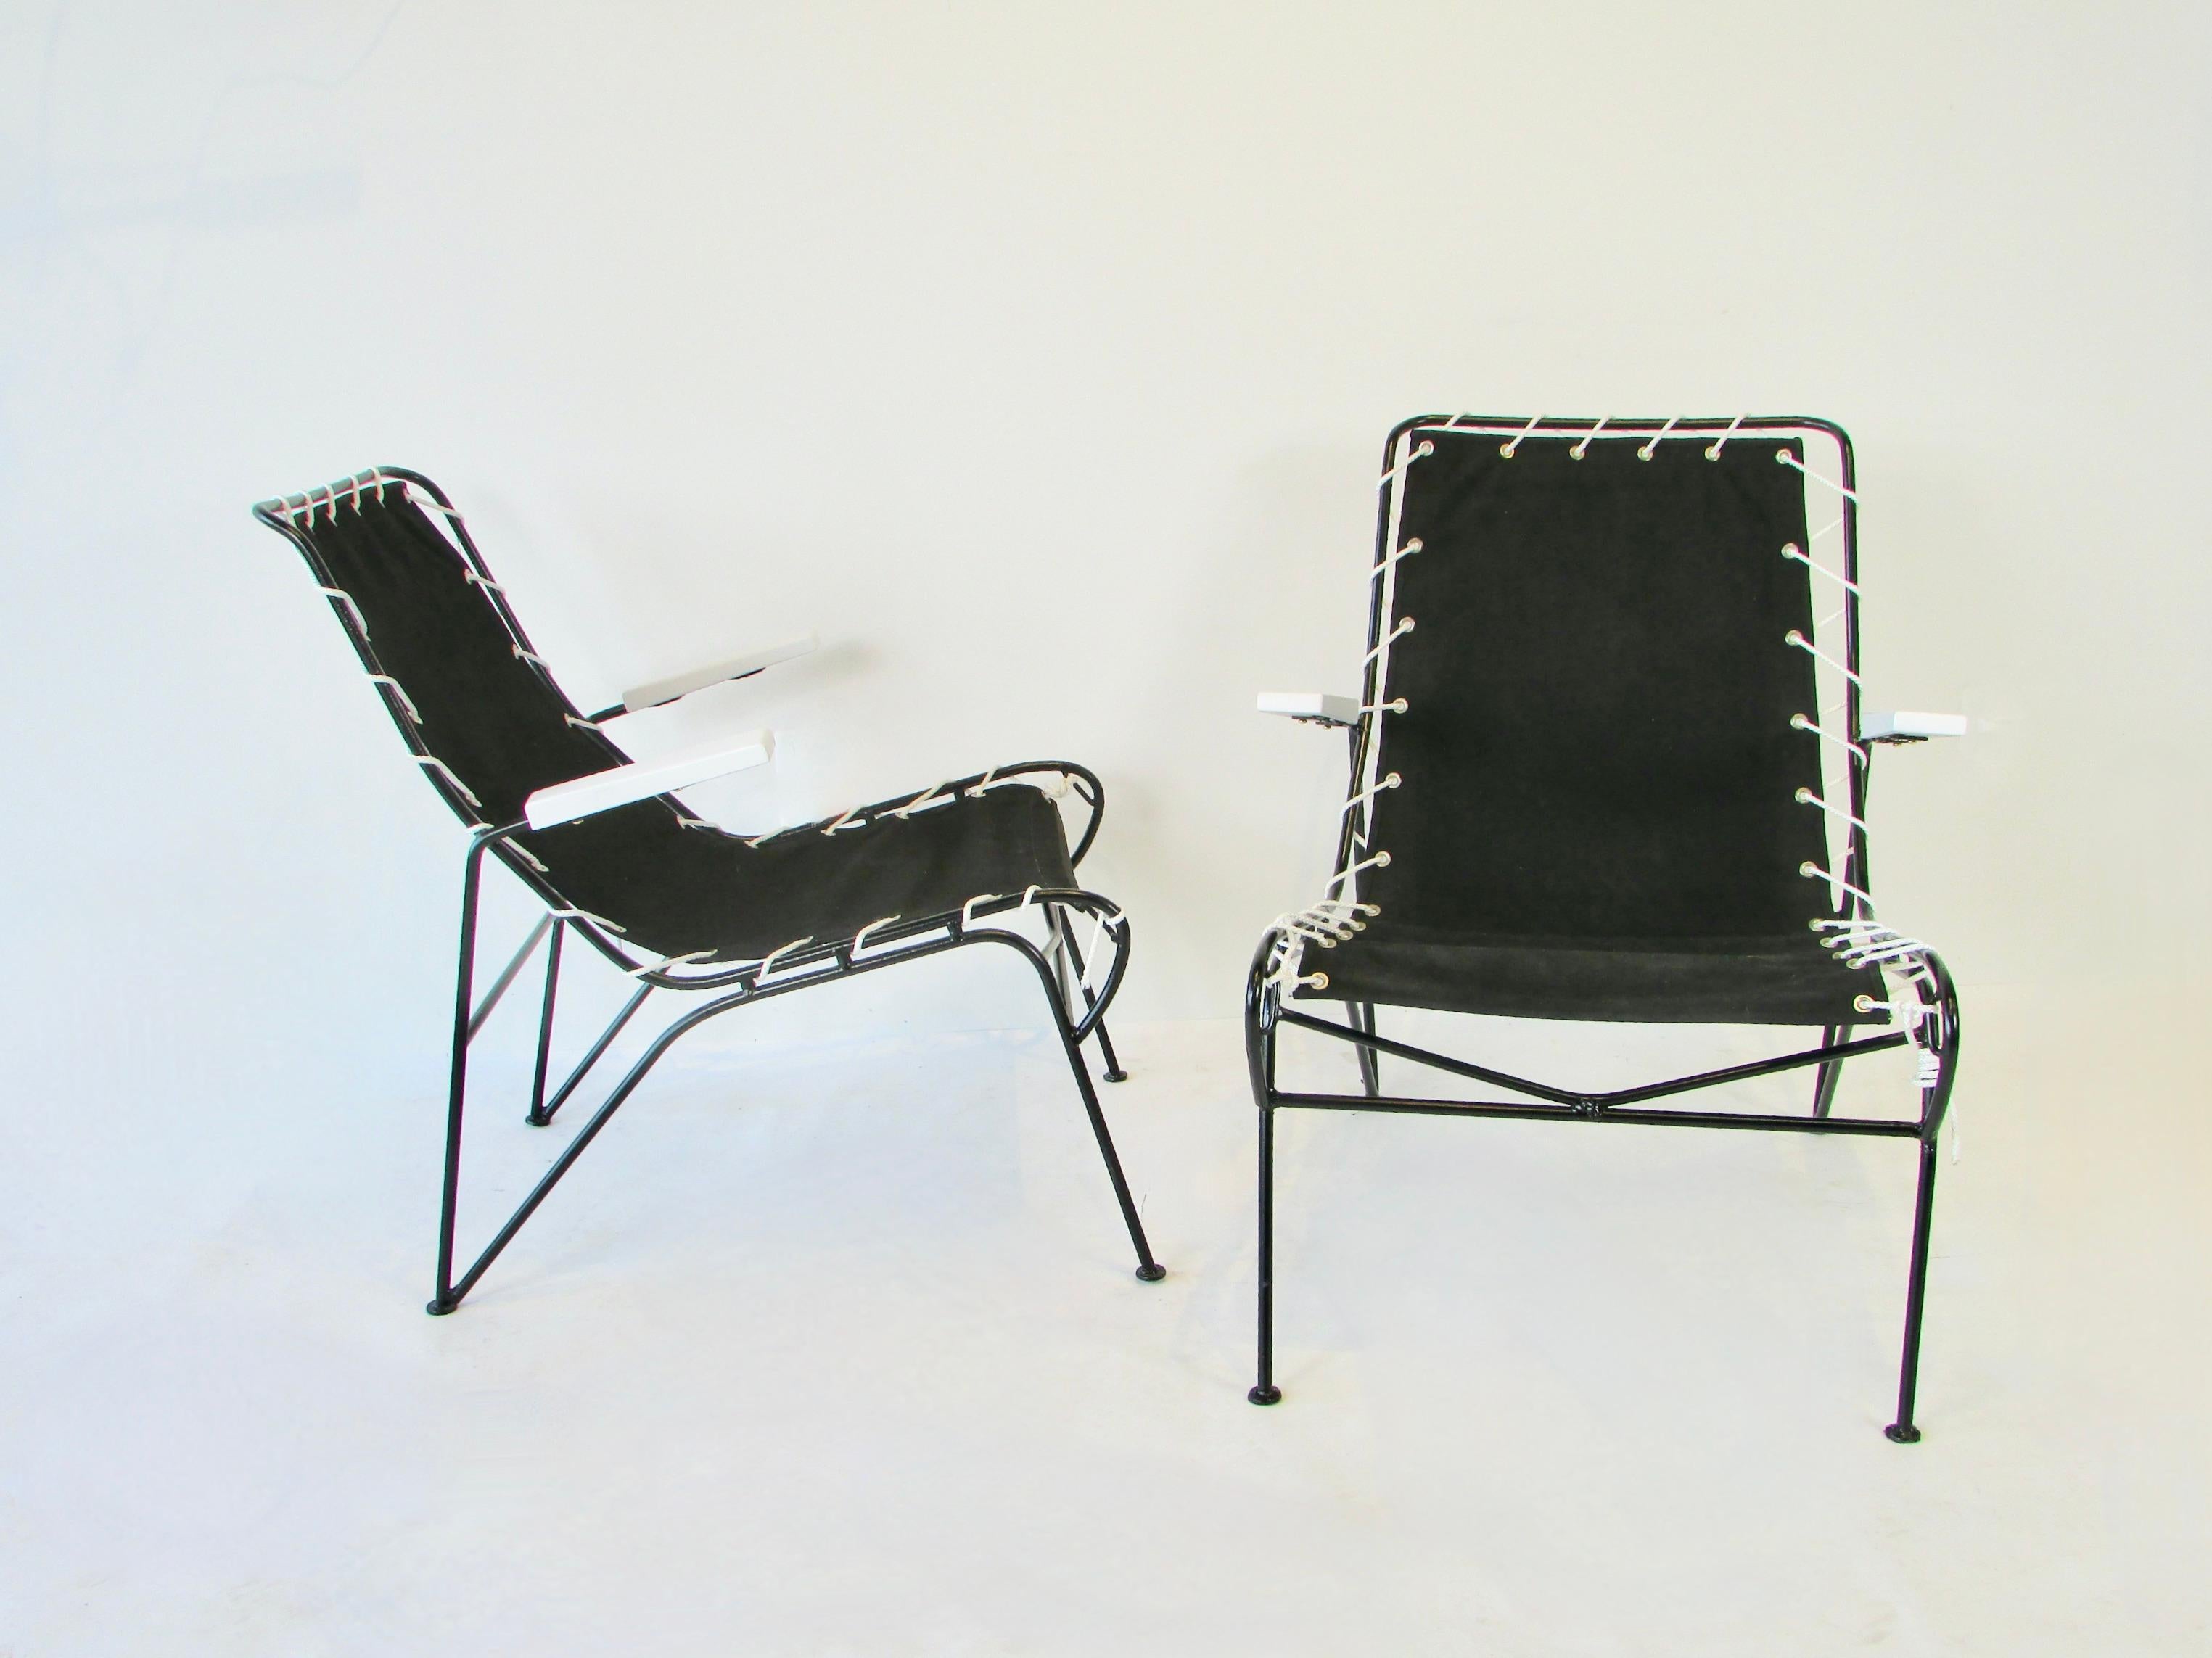 Paire de chaises longues de la ligne Ficks Reed Sol - Air. Conçu par l'équipe mari/femme de Pipsin Saarinen et Robert Swanson. Les cadres en fer forgé revêtus de poudre noire soutiennent des bras en bois laqué blanc, enveloppés de cordon blanc et